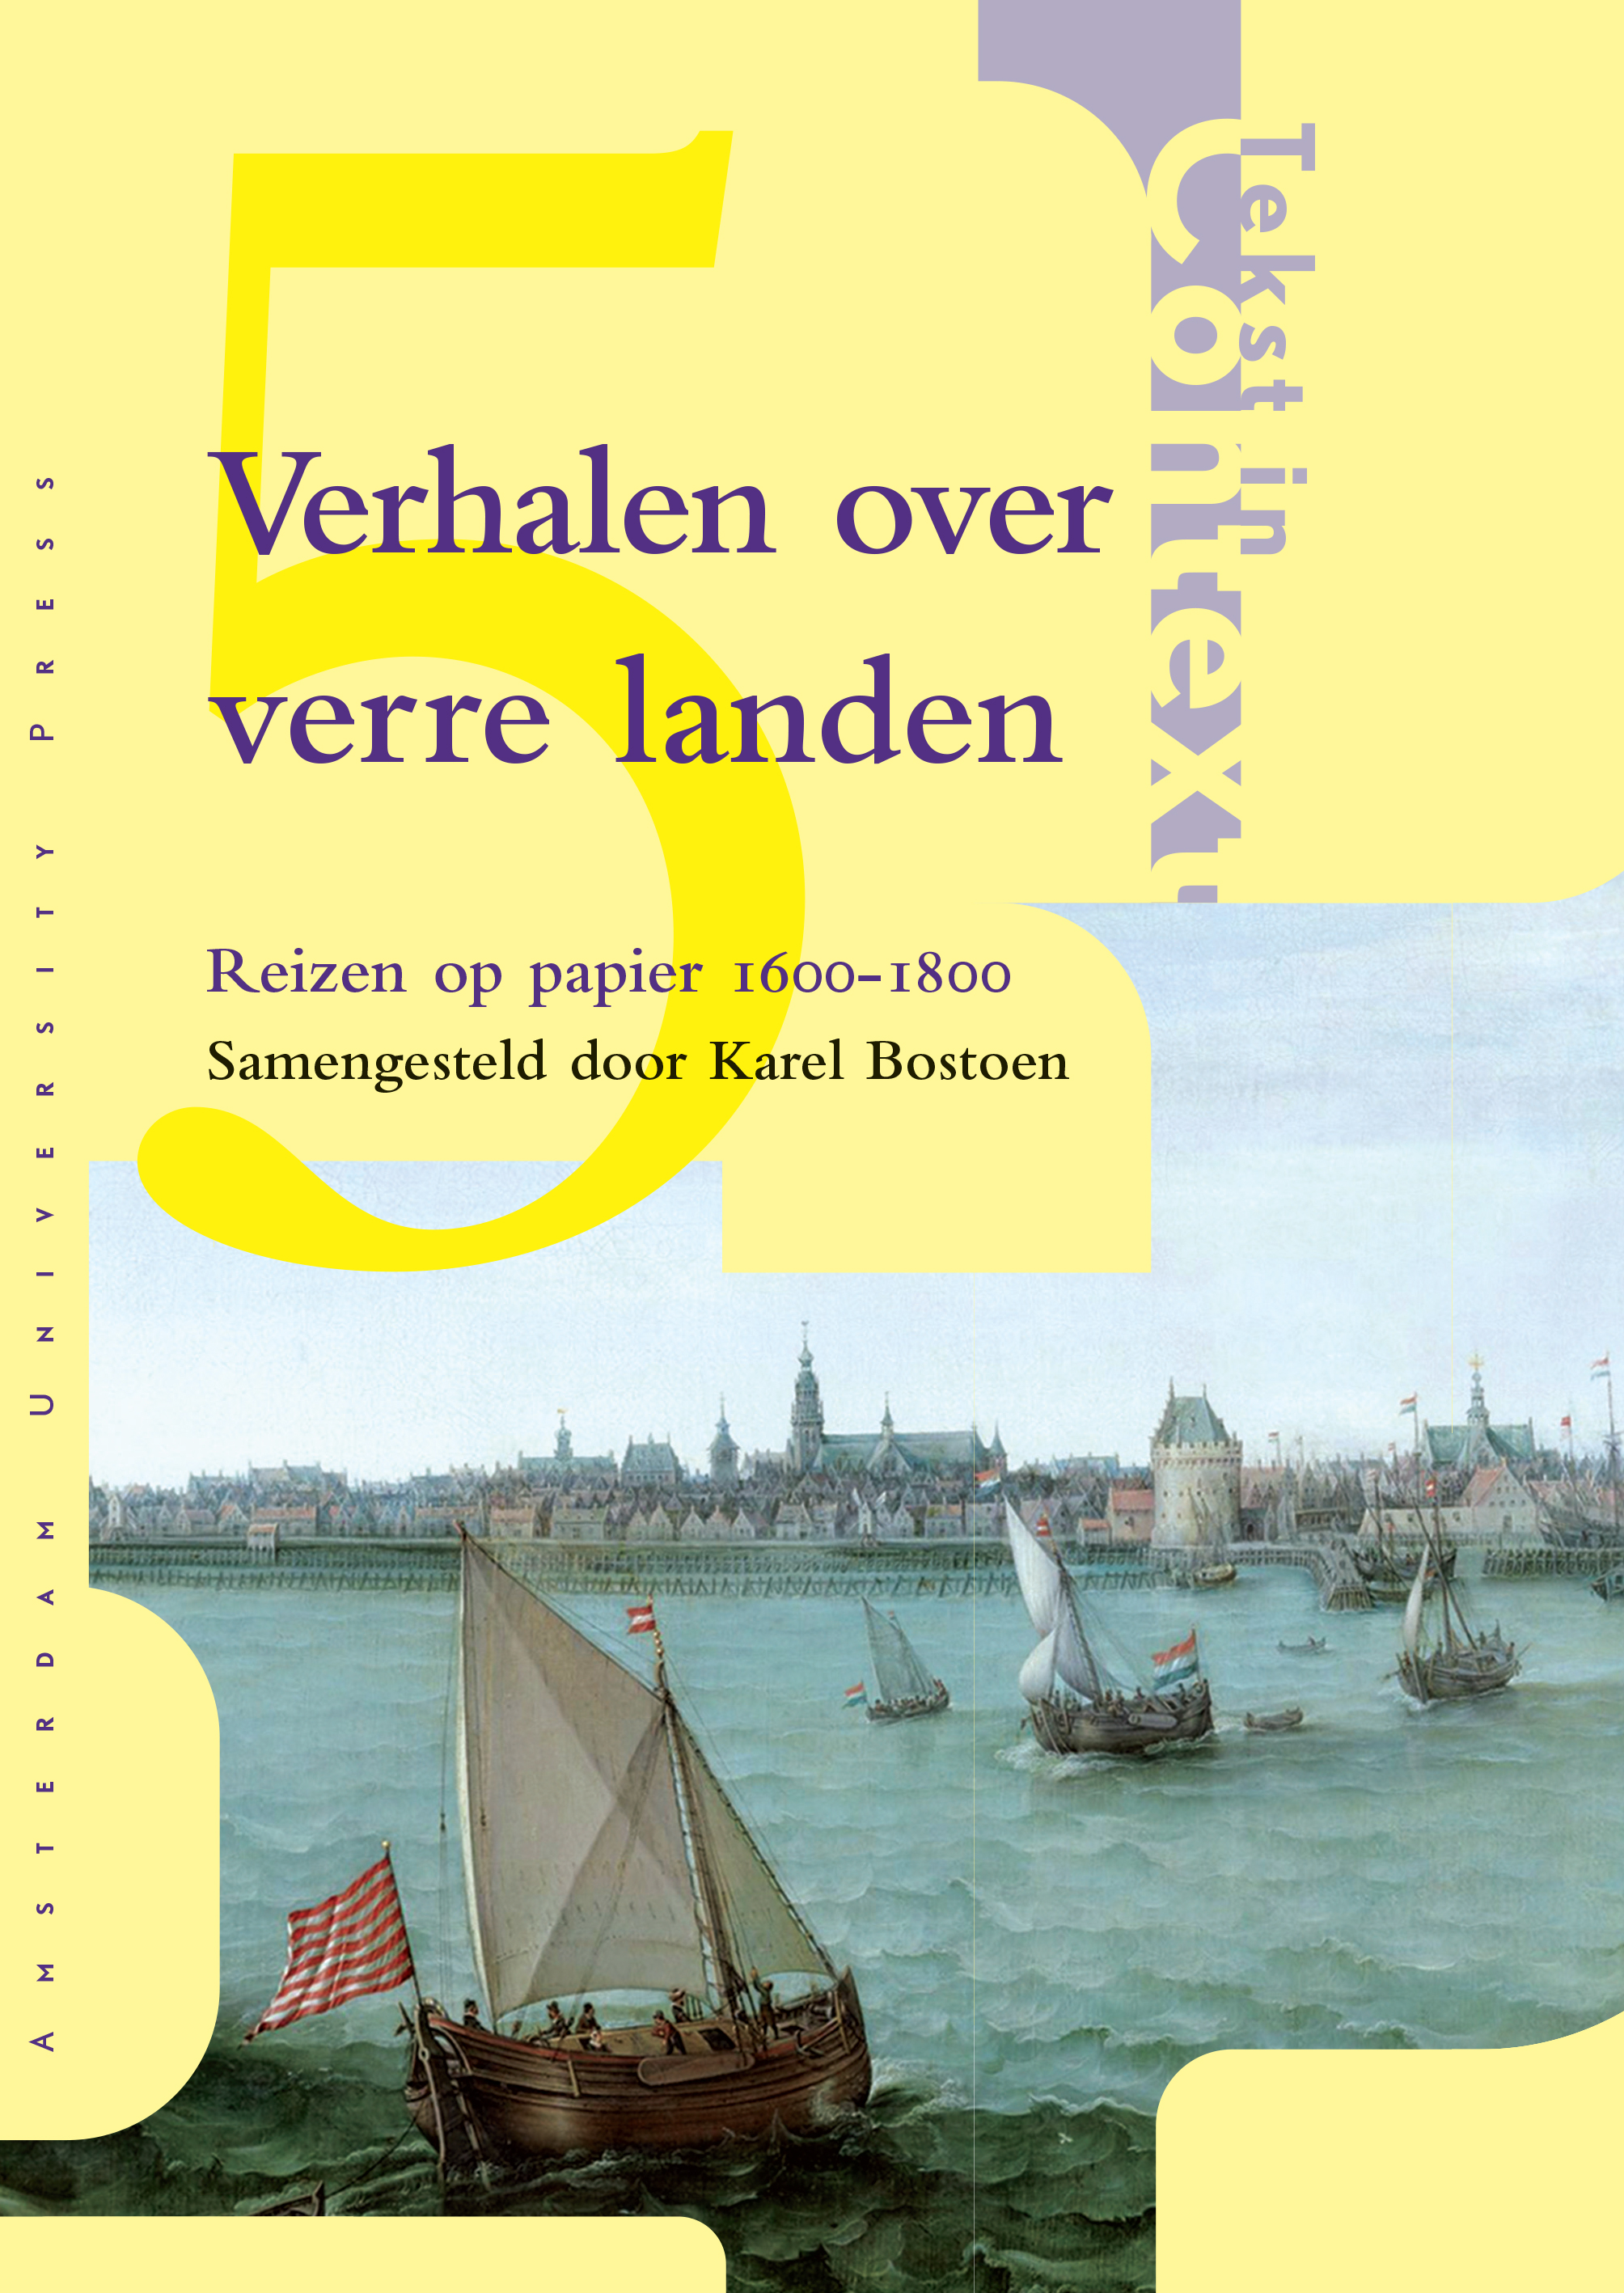 Middeleeuwse verhalen uit de Lage Landen by Ingrid Biesheuvel